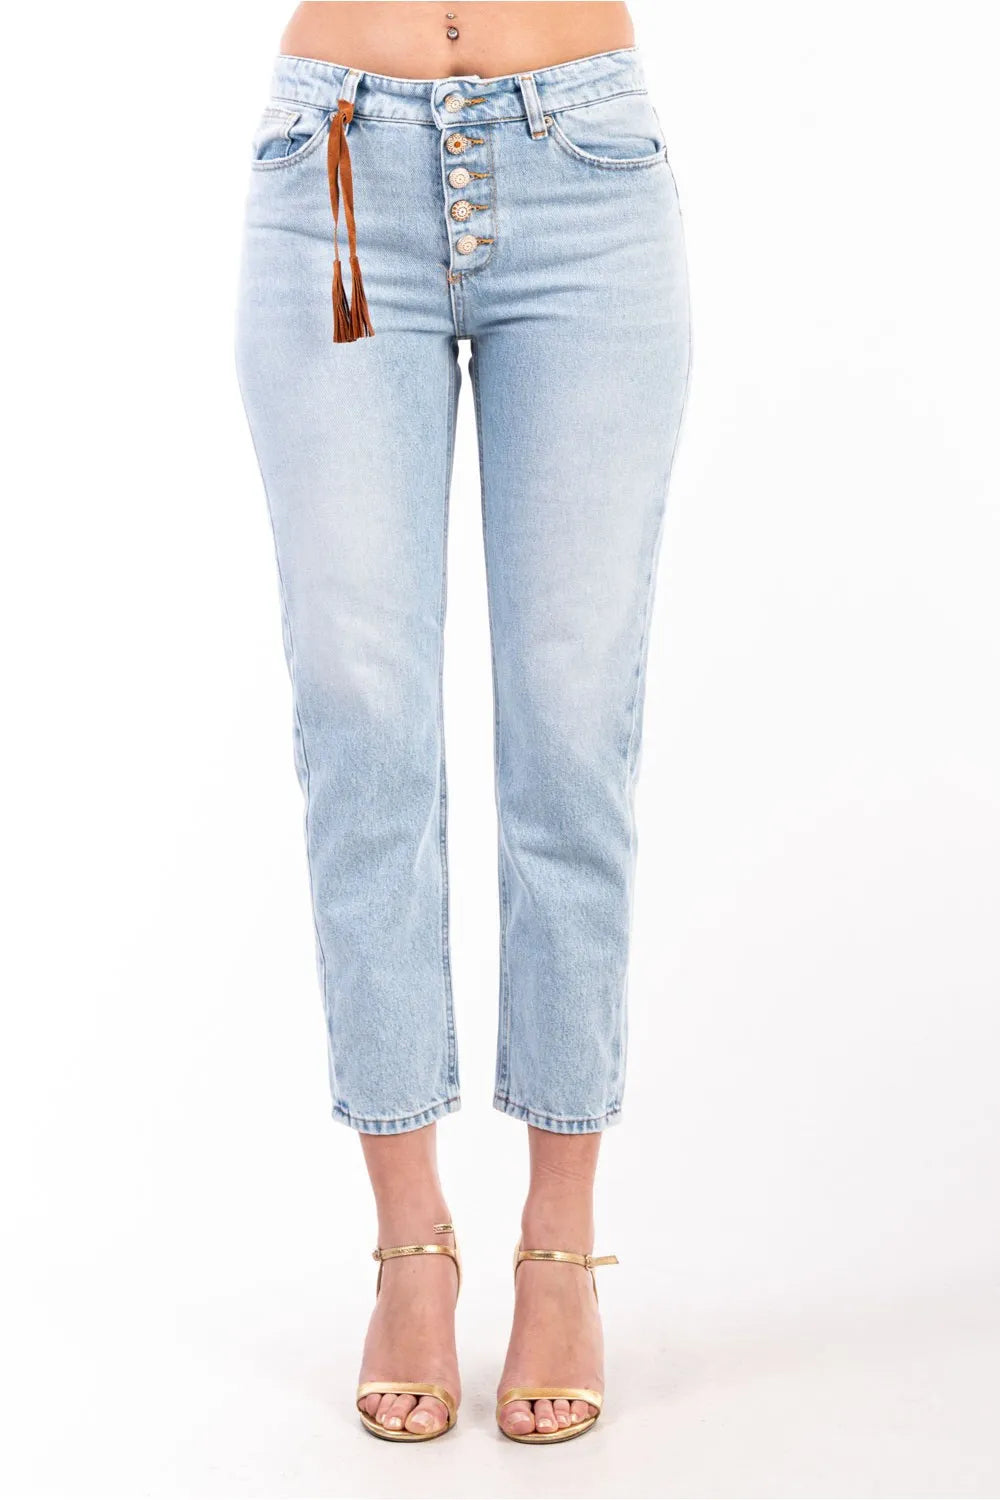 Vicolo donna jeans DB5032 denim chiaro